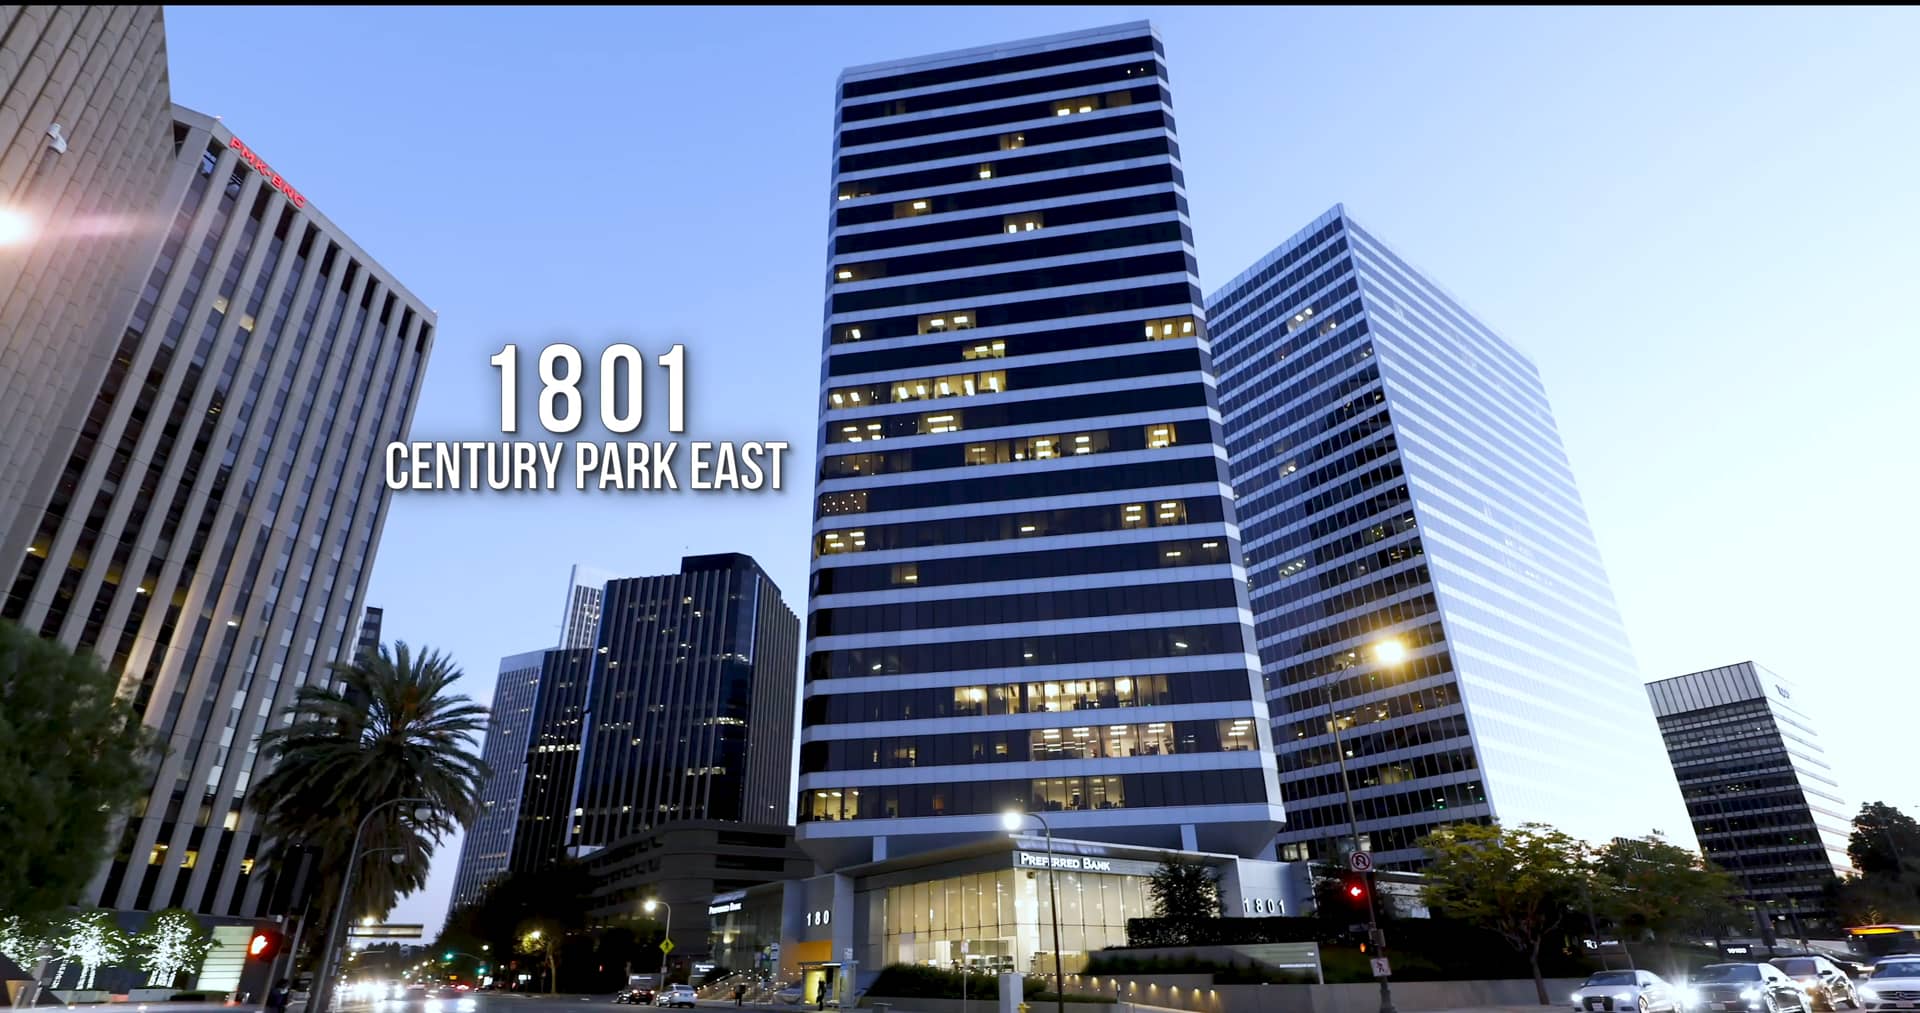 1801 Century Park East on Vimeo